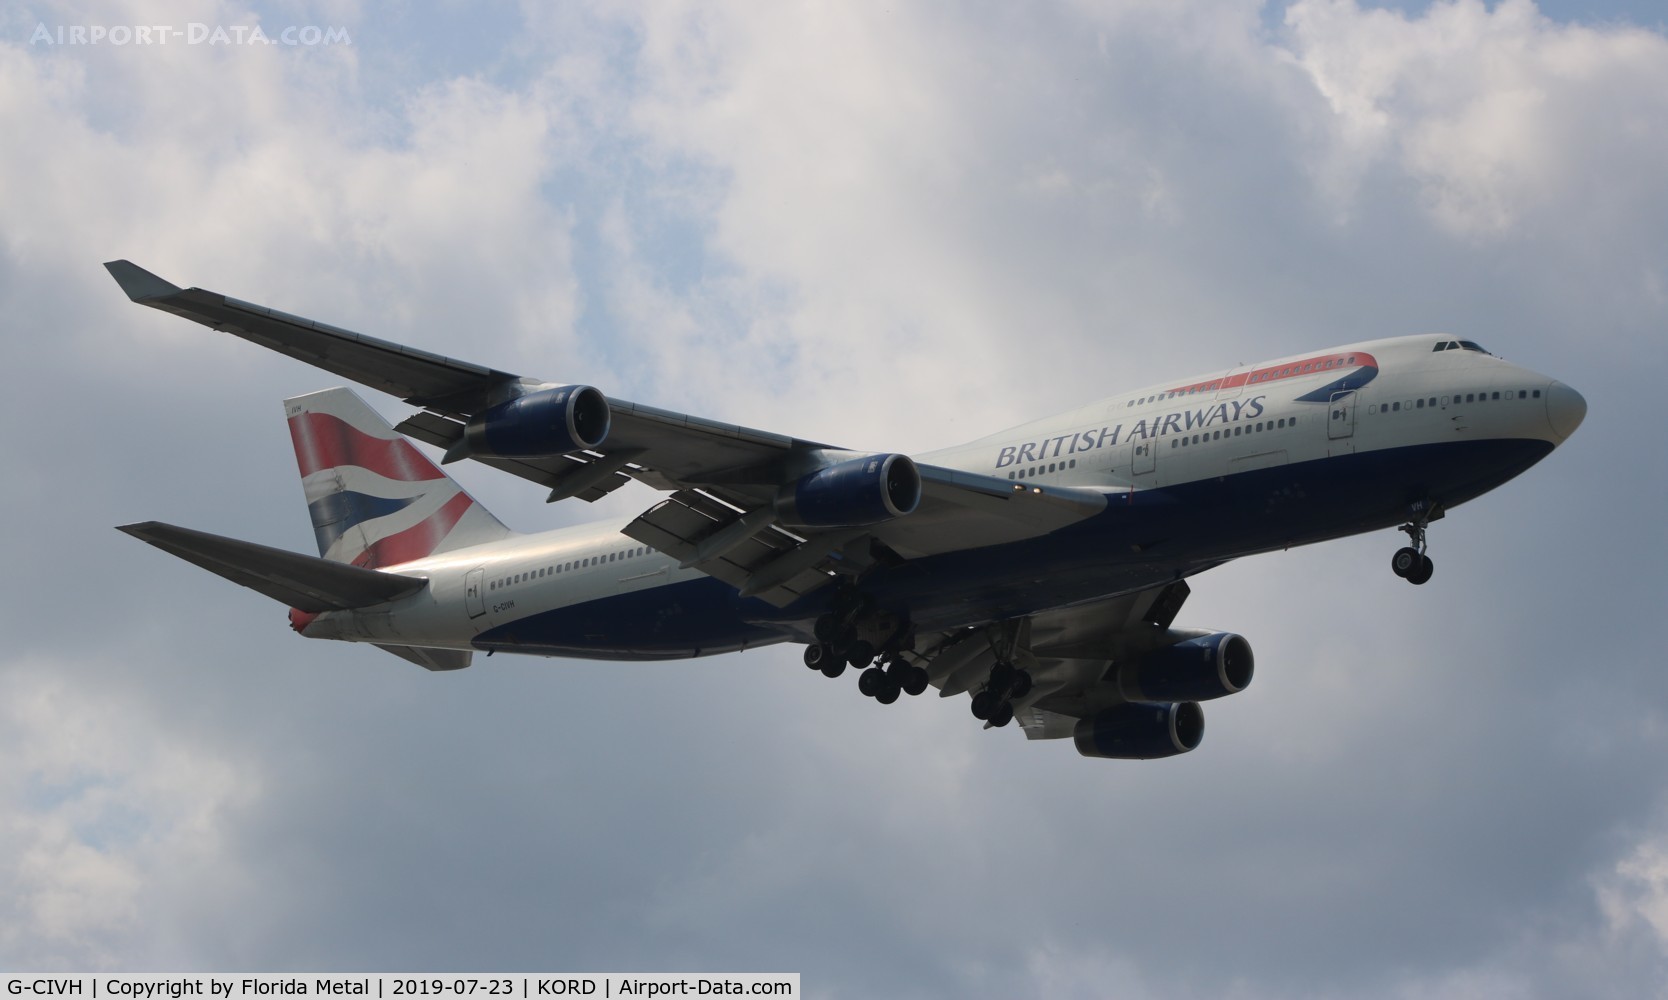 G-CIVH, 1996 Boeing 747-436 C/N 25809, British